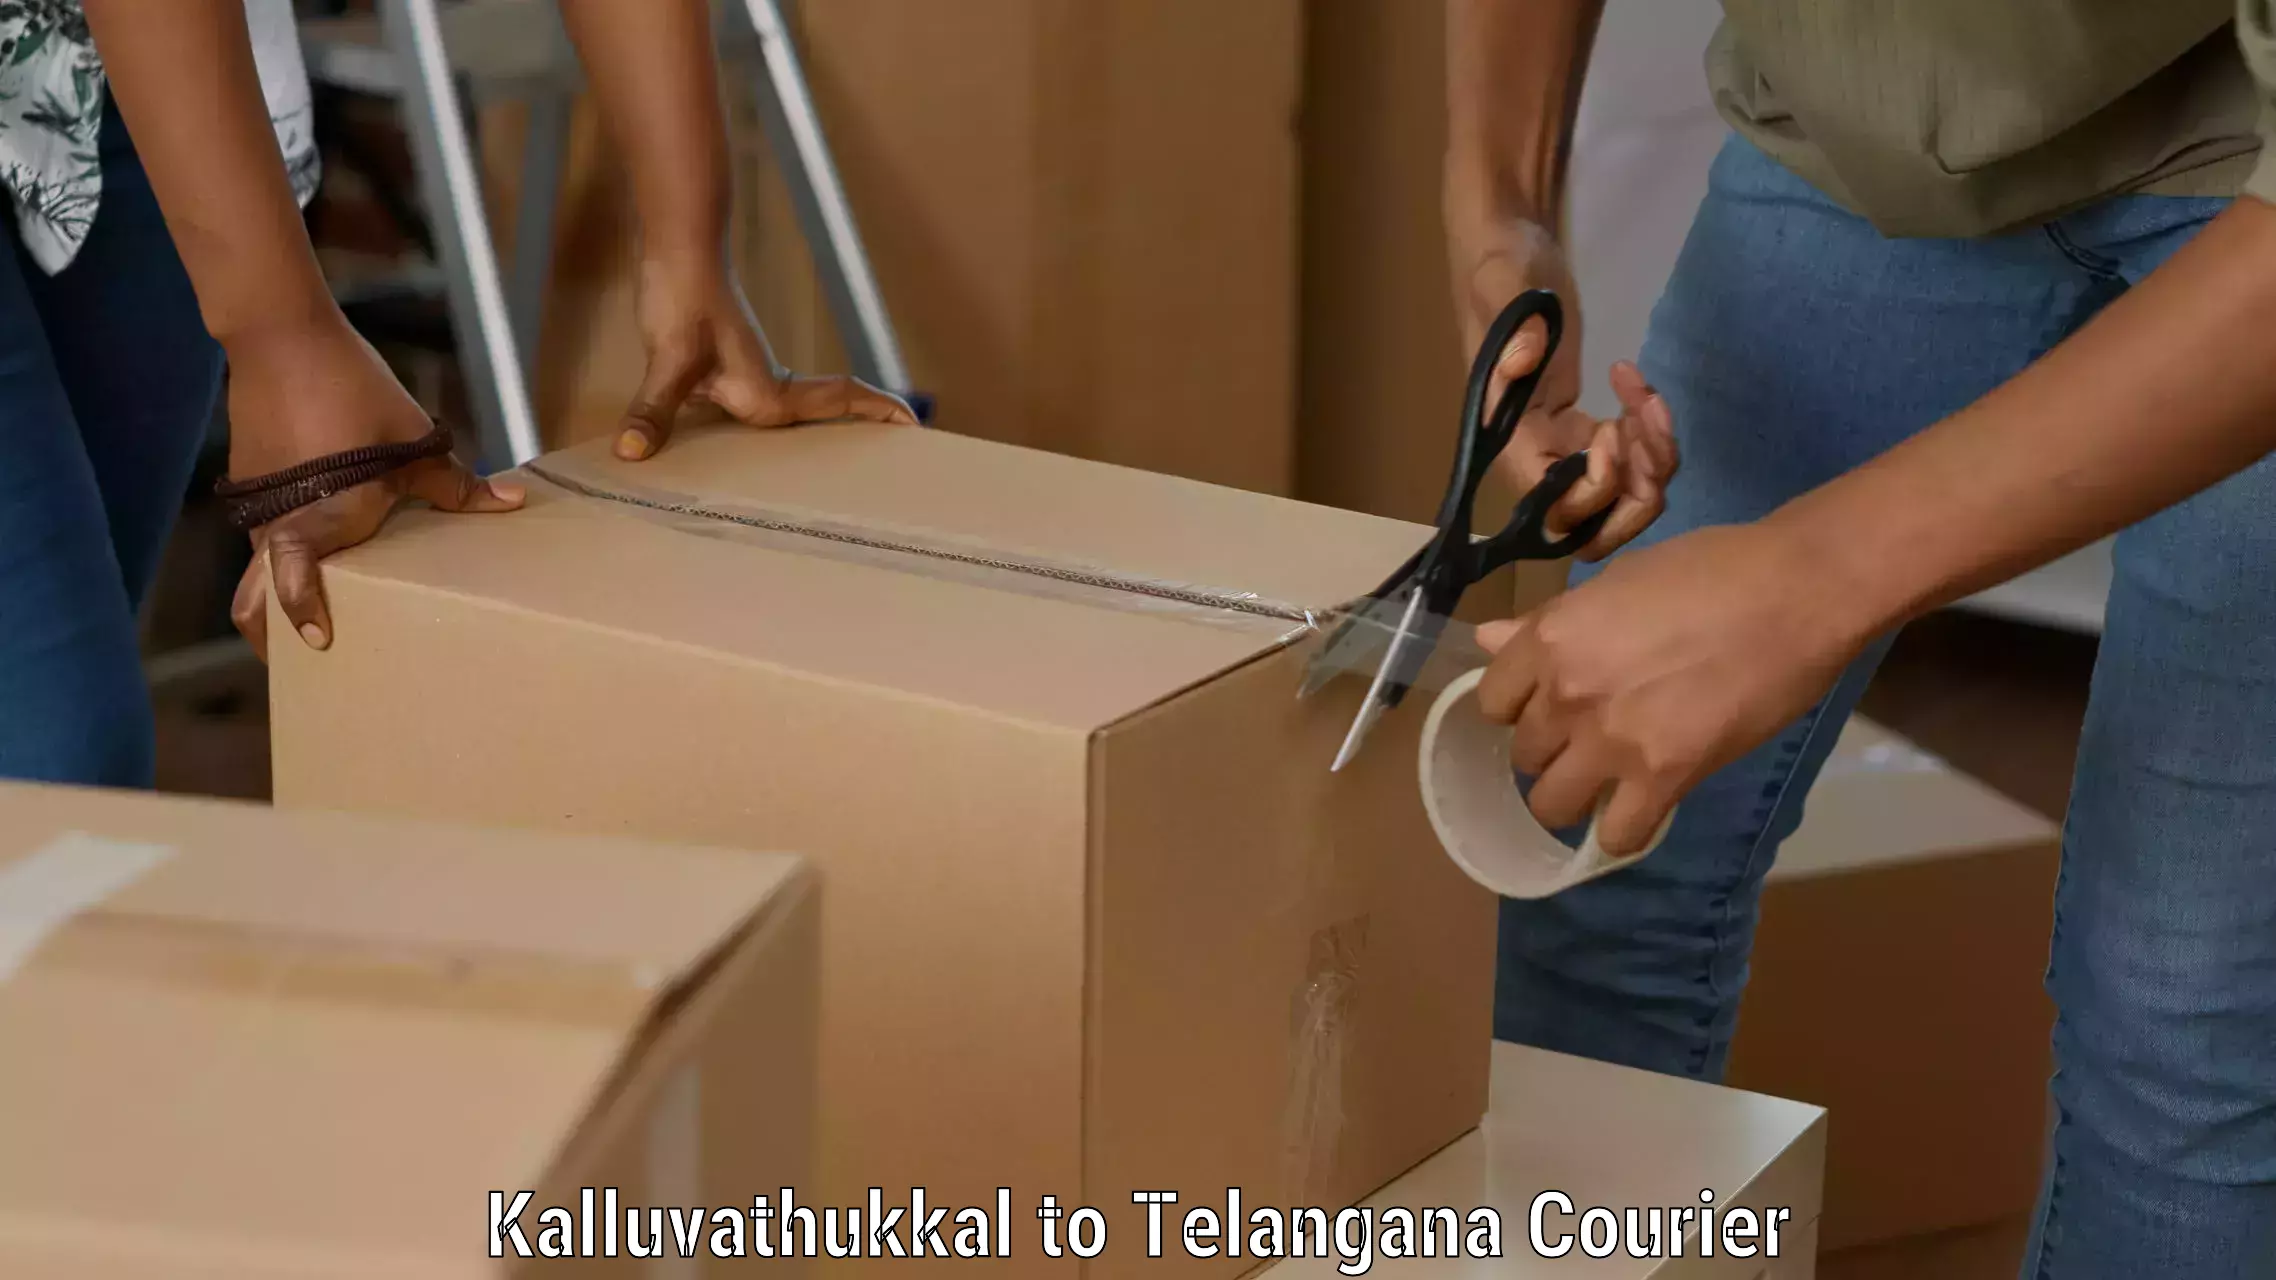 Premium courier services Kalluvathukkal to Mudigonda